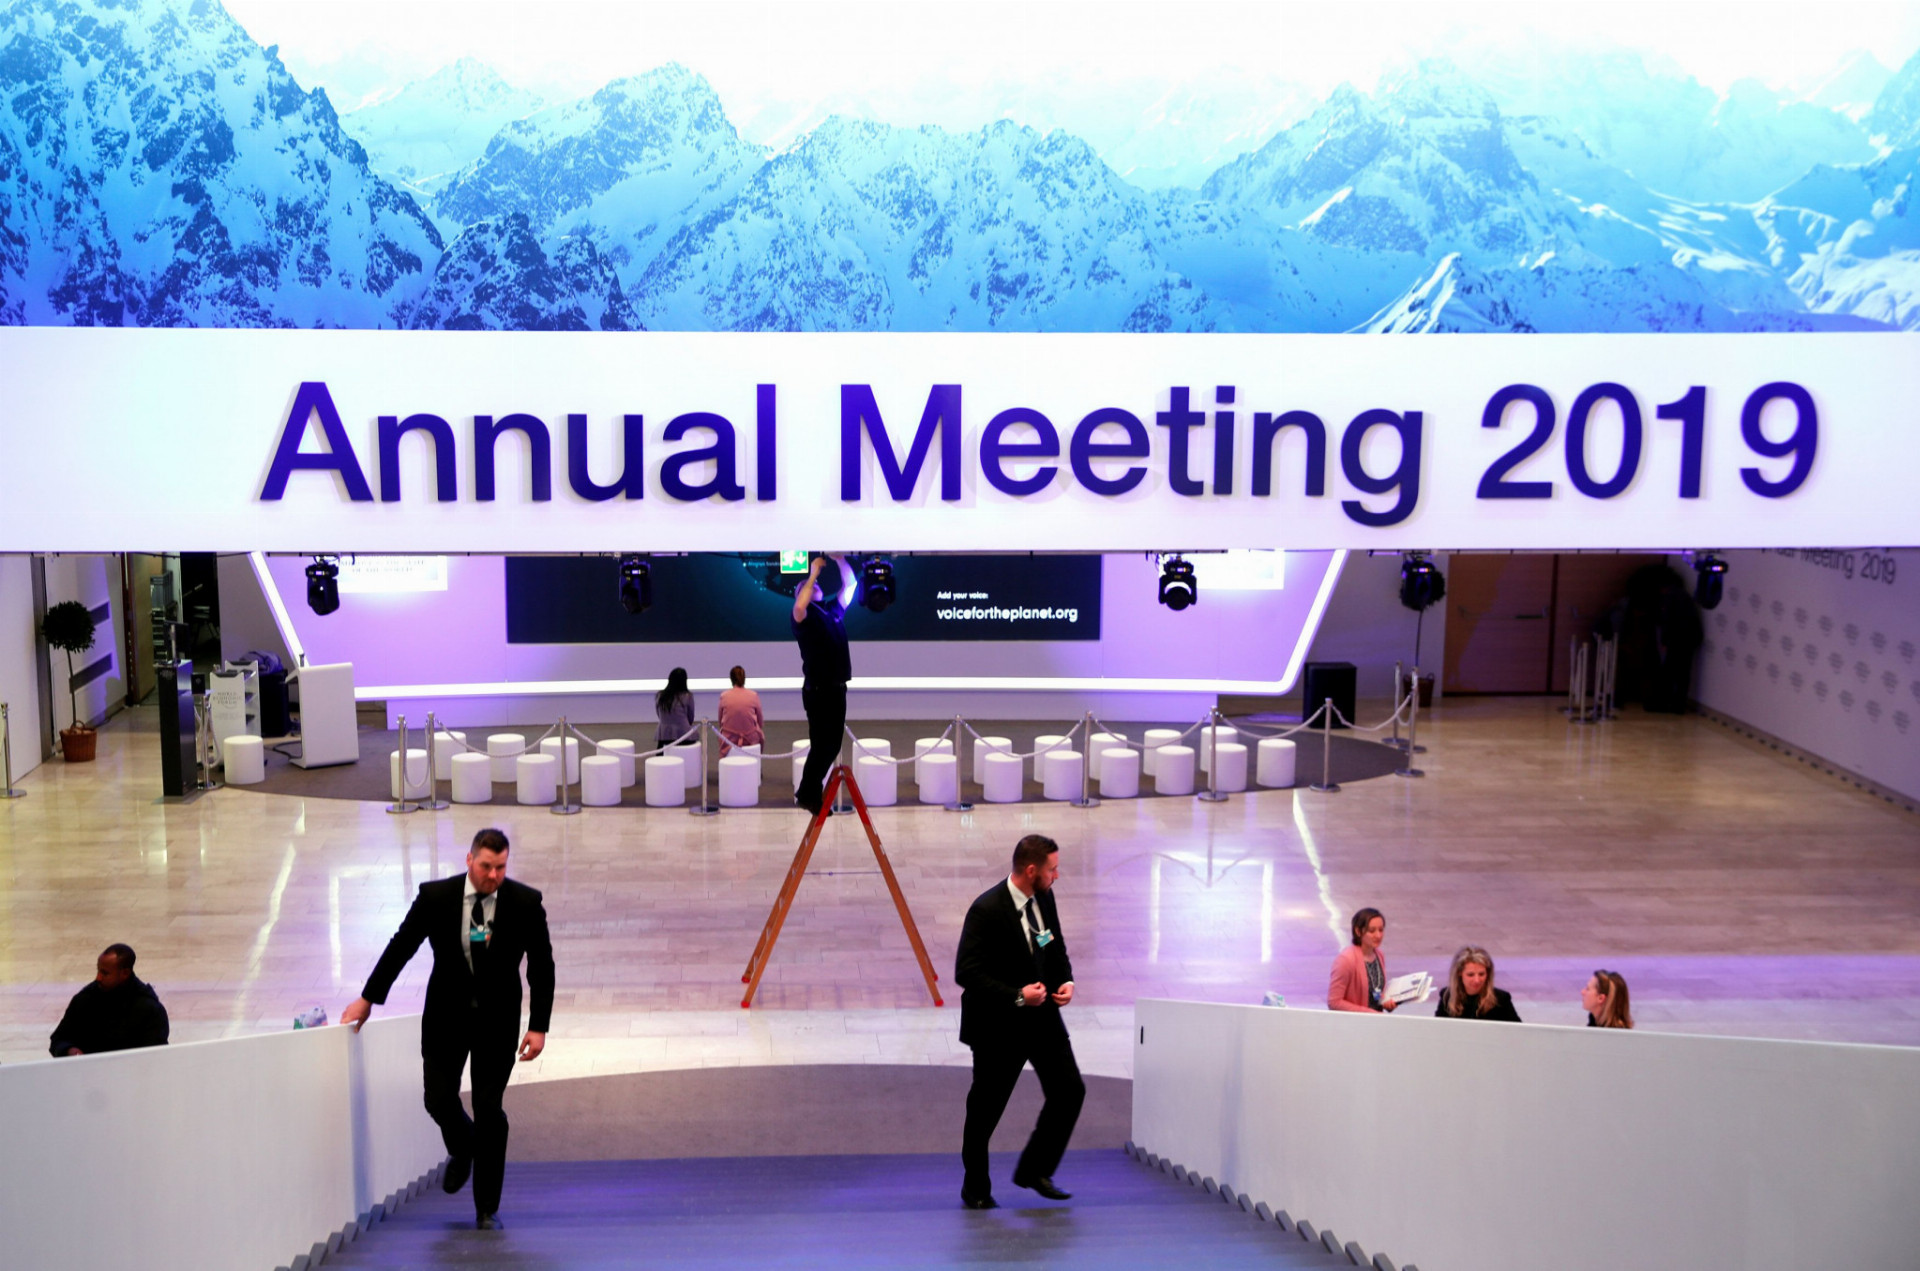 Každoročné Svetové ekonomické fórum otvorili v utorok vo švajčiarskom Davose. Zúčastňuje sa na ňom okolo tritisíc osobností z celého sveta.